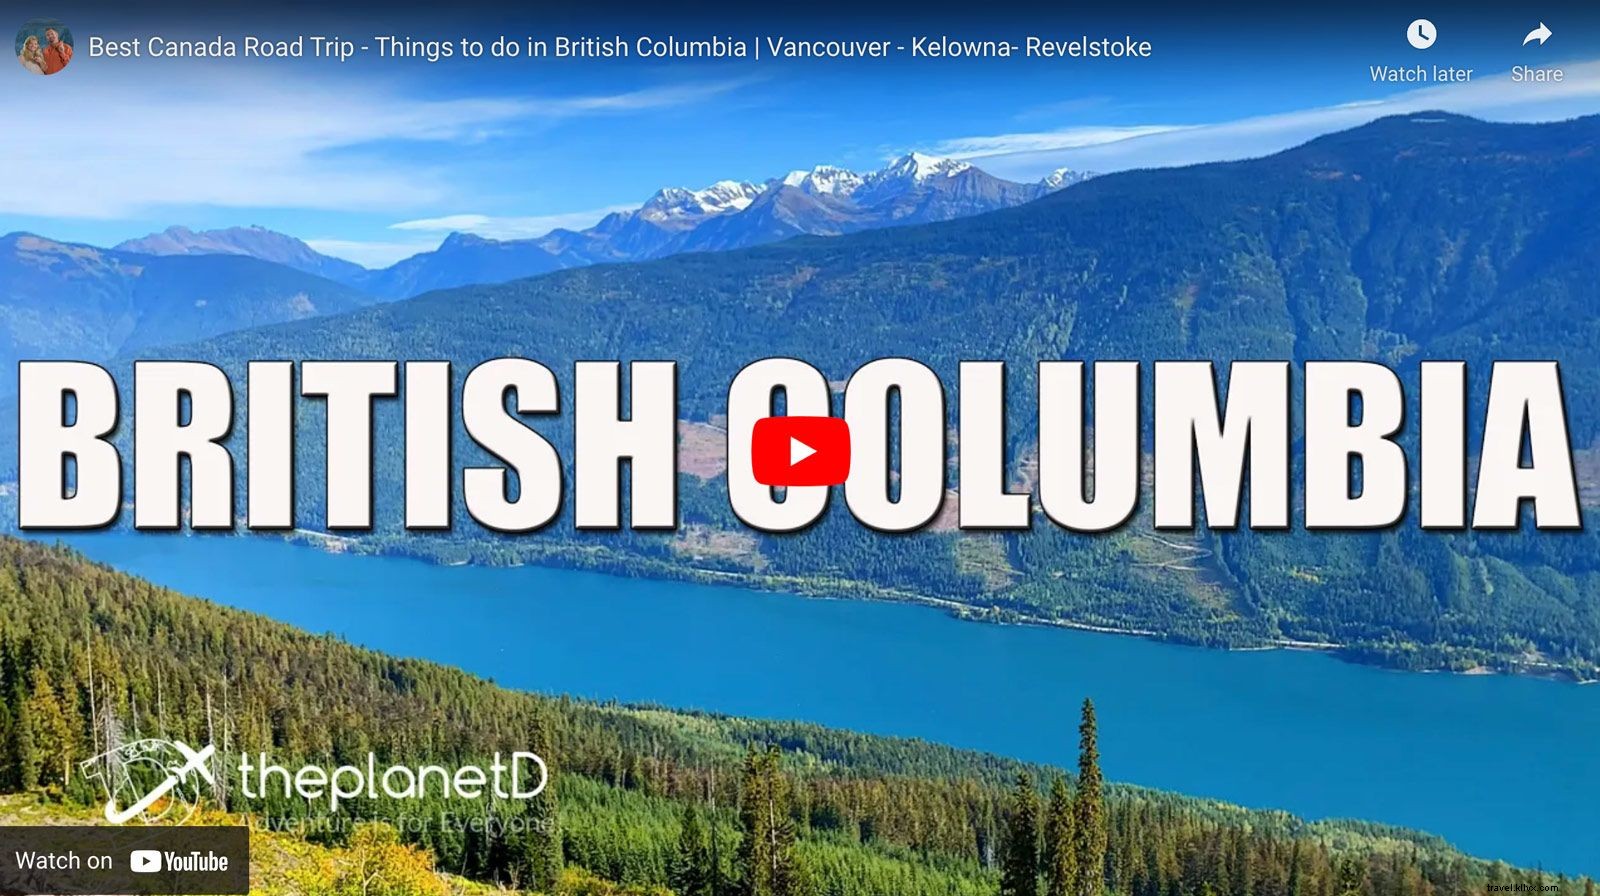 Melhor viagem de carro pela Colúmbia Britânica - Vancouver - Kelowna - Revelstoke